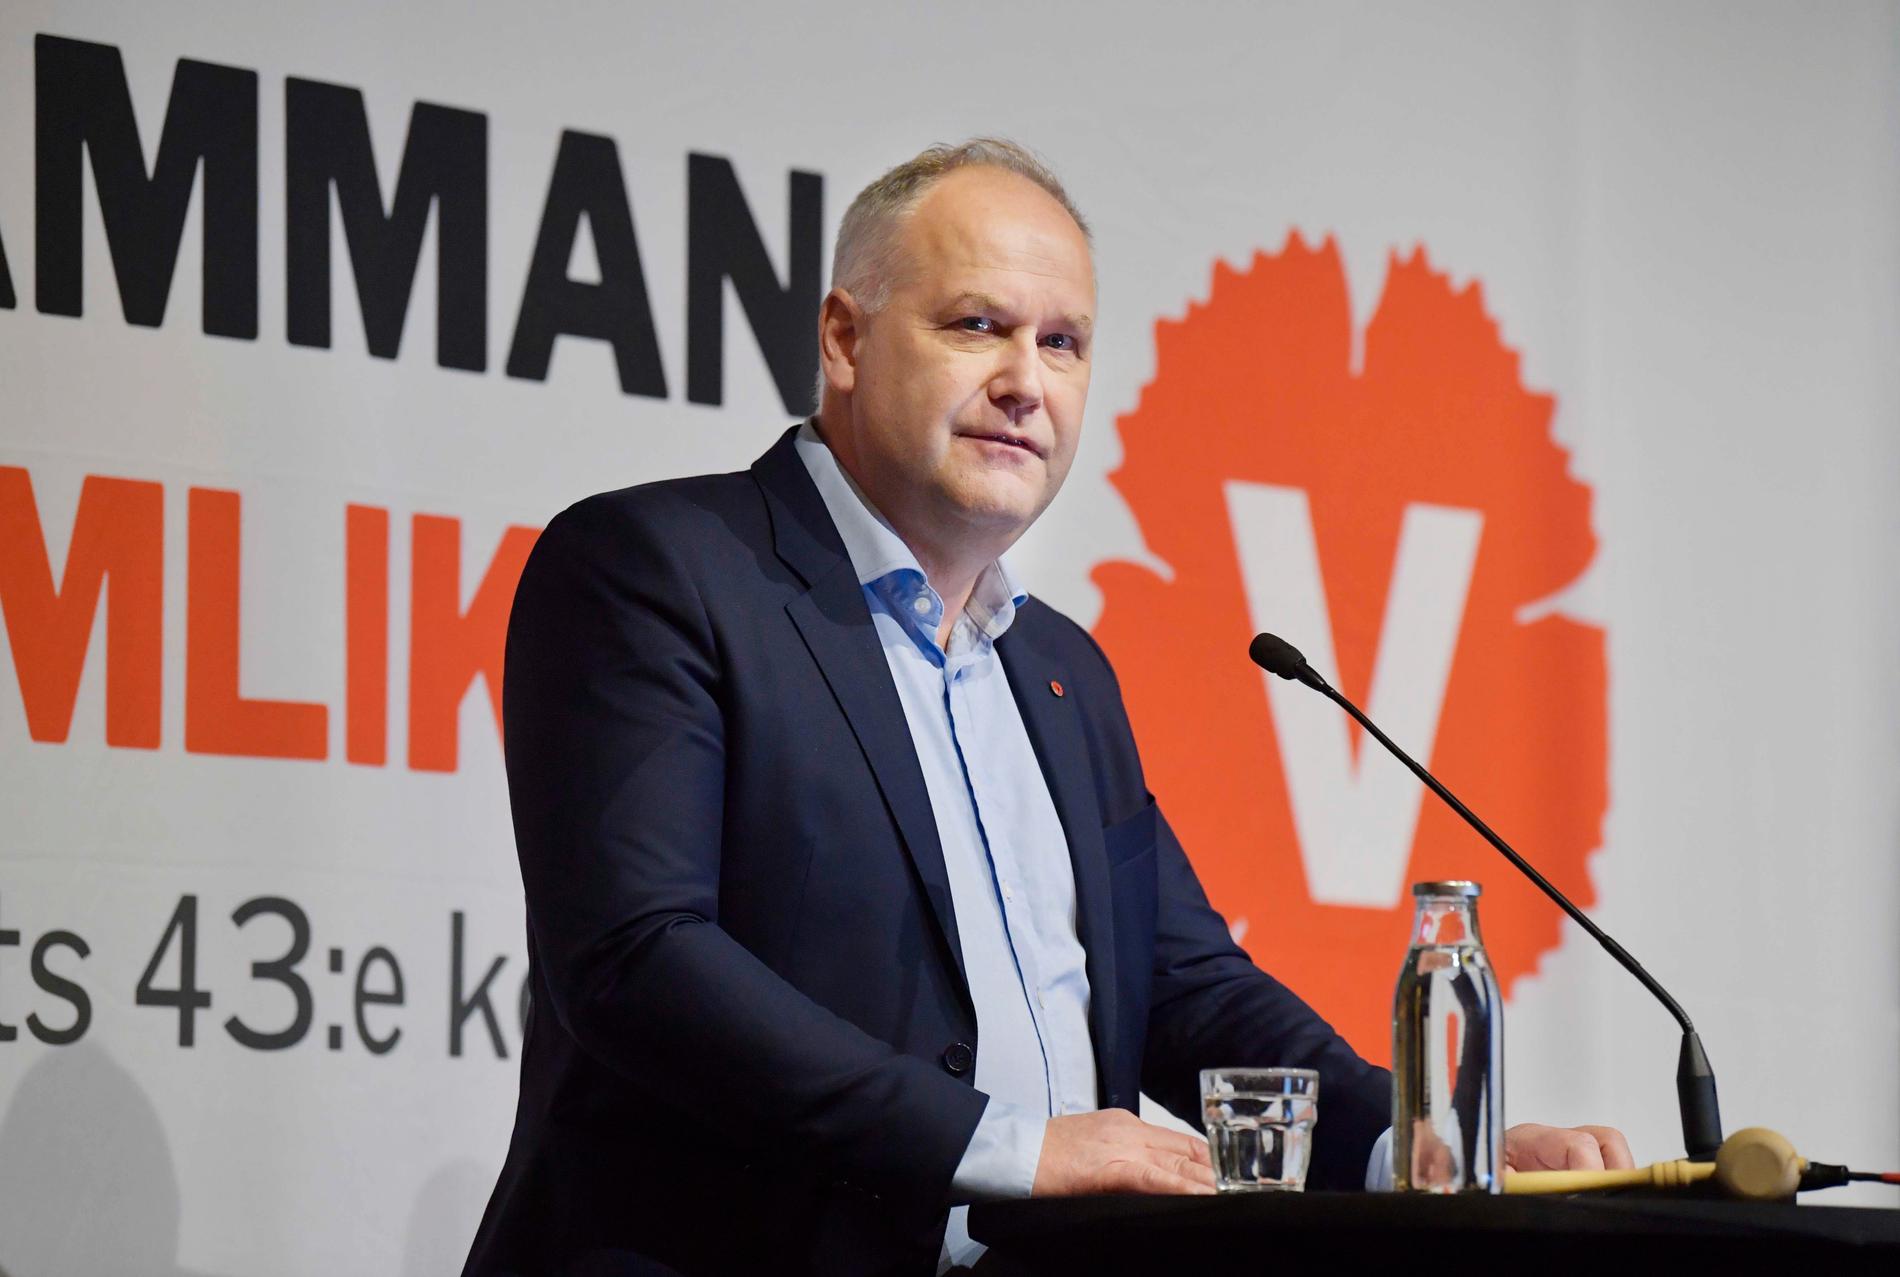 Vänsterpartiets avgående partiledare Jonas Sjöstedt håller tal en sista gång när Vänsterpartiet håller kongress på Hilton hotell i Stockholm.